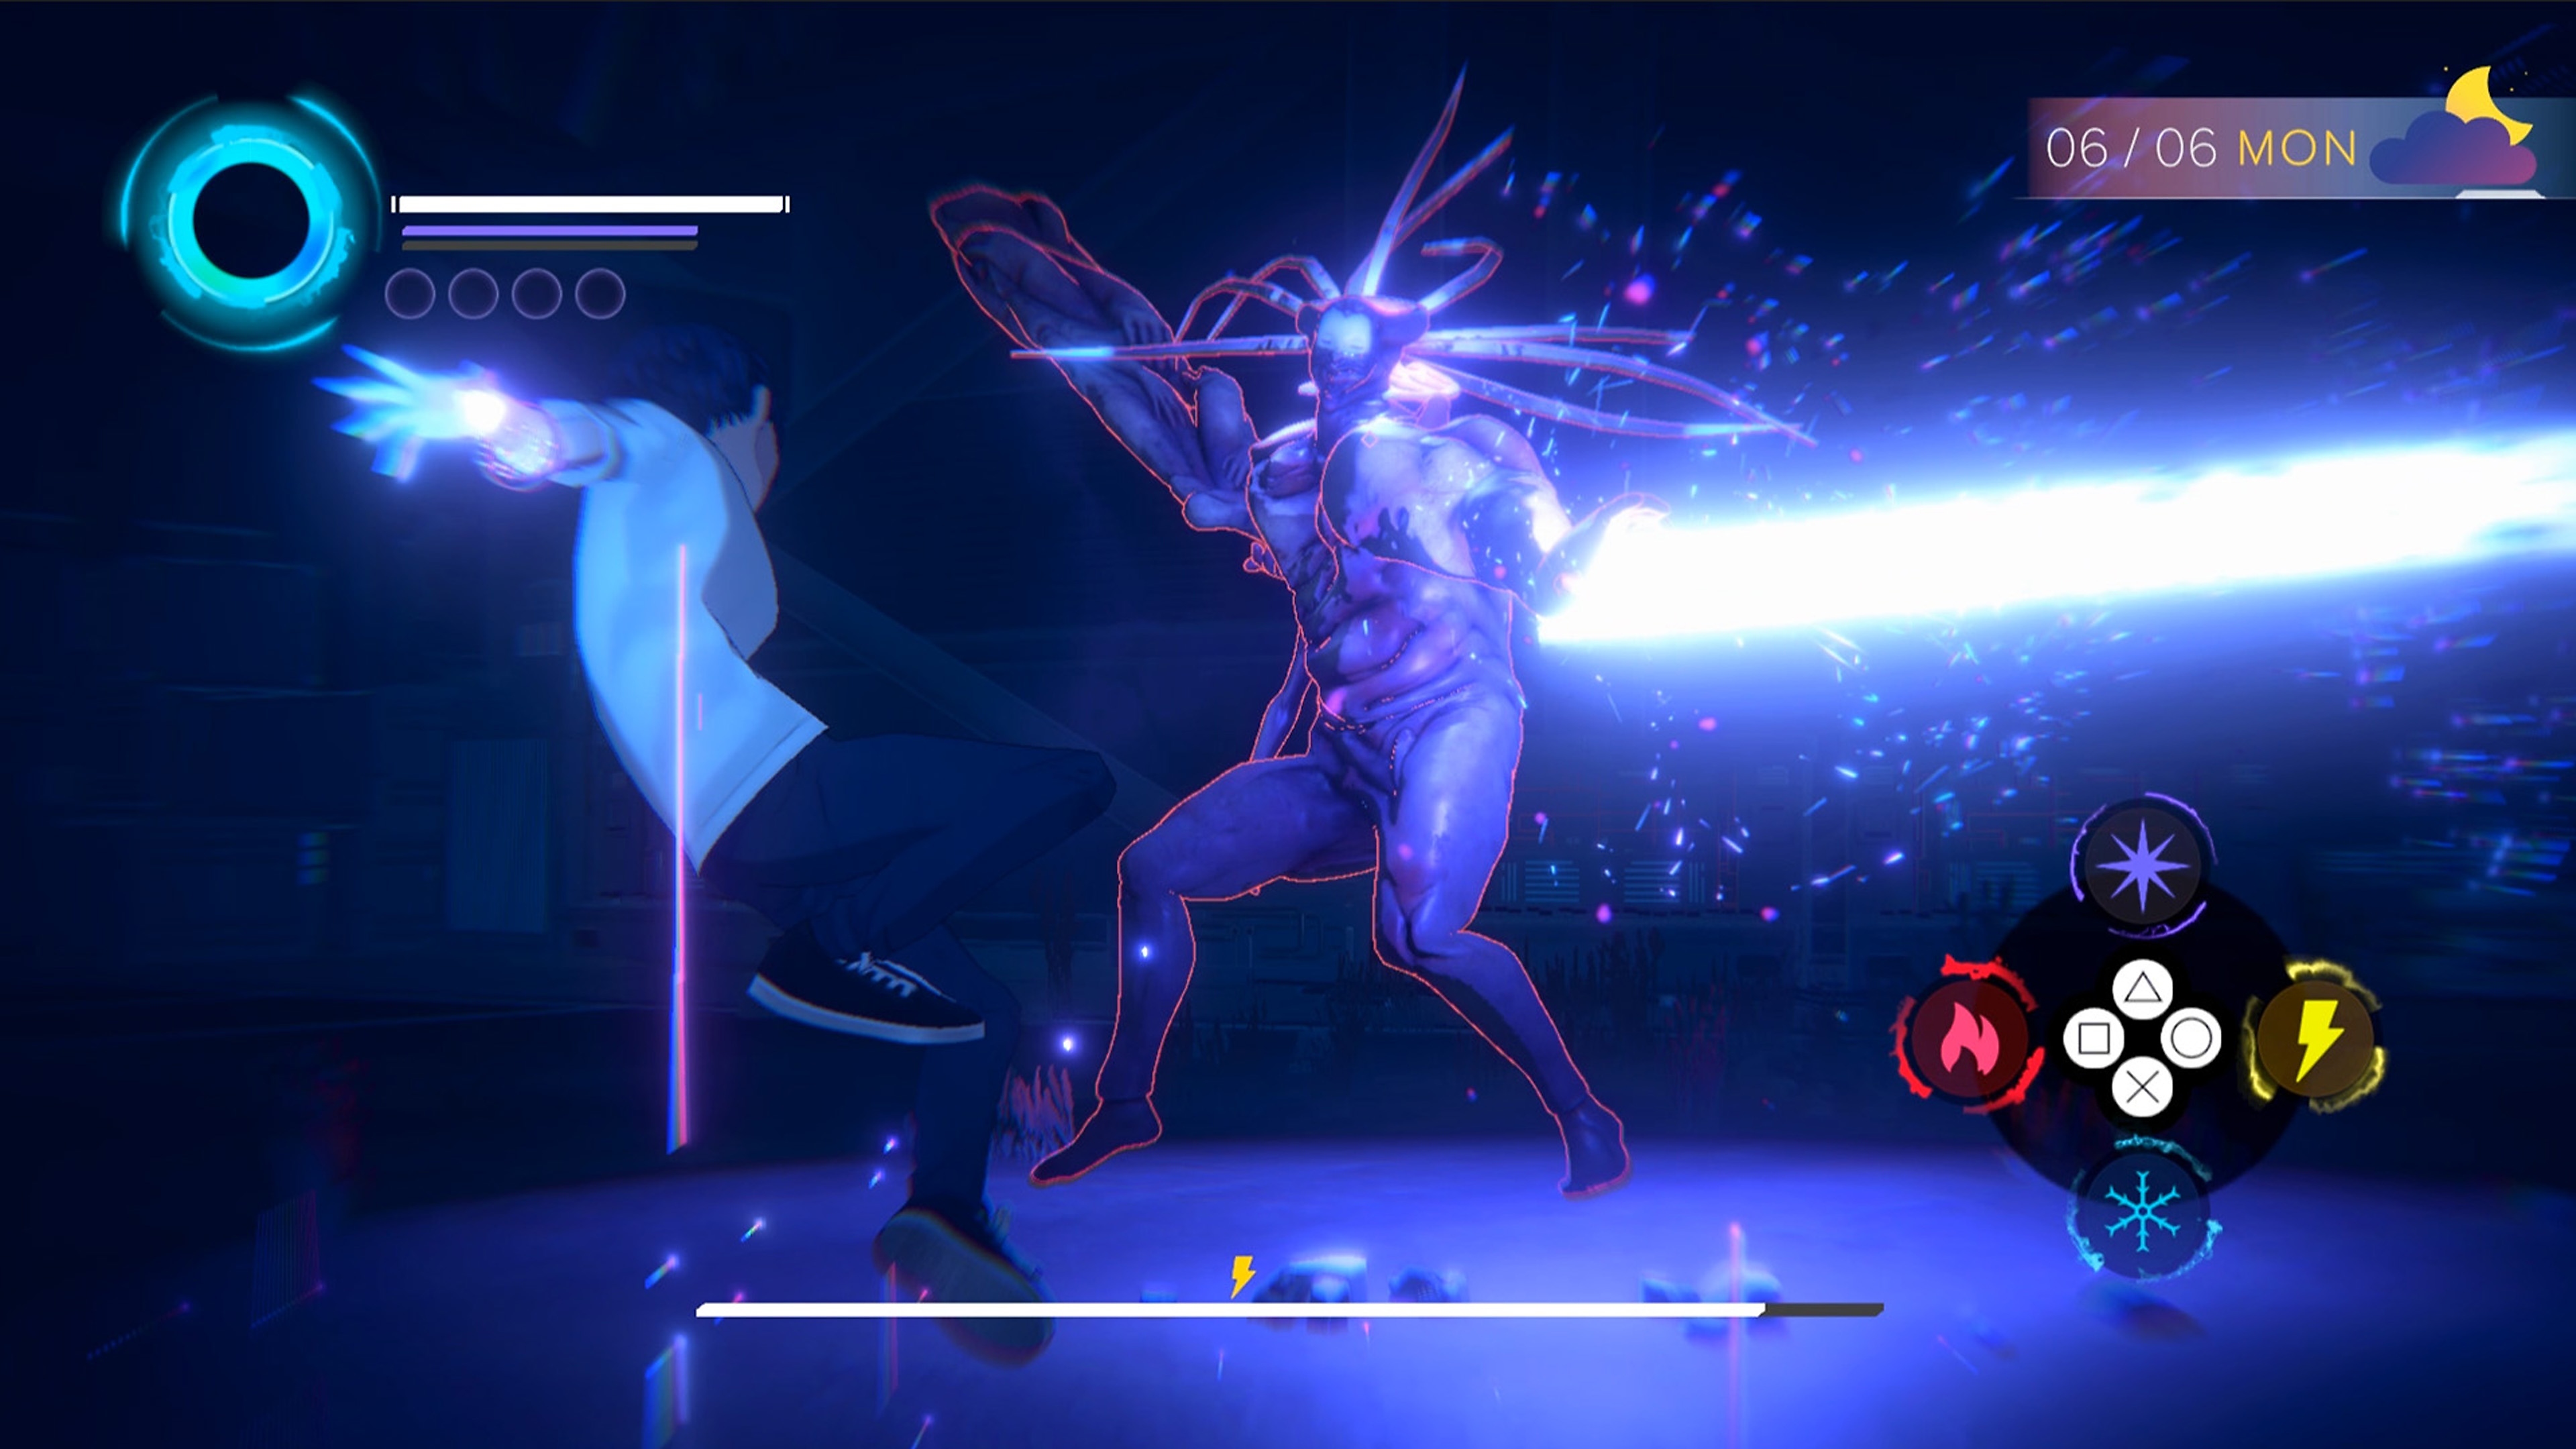 《Eternights》螢幕截圖，展示高中生角色與大型人形惡魔生物戰鬥。